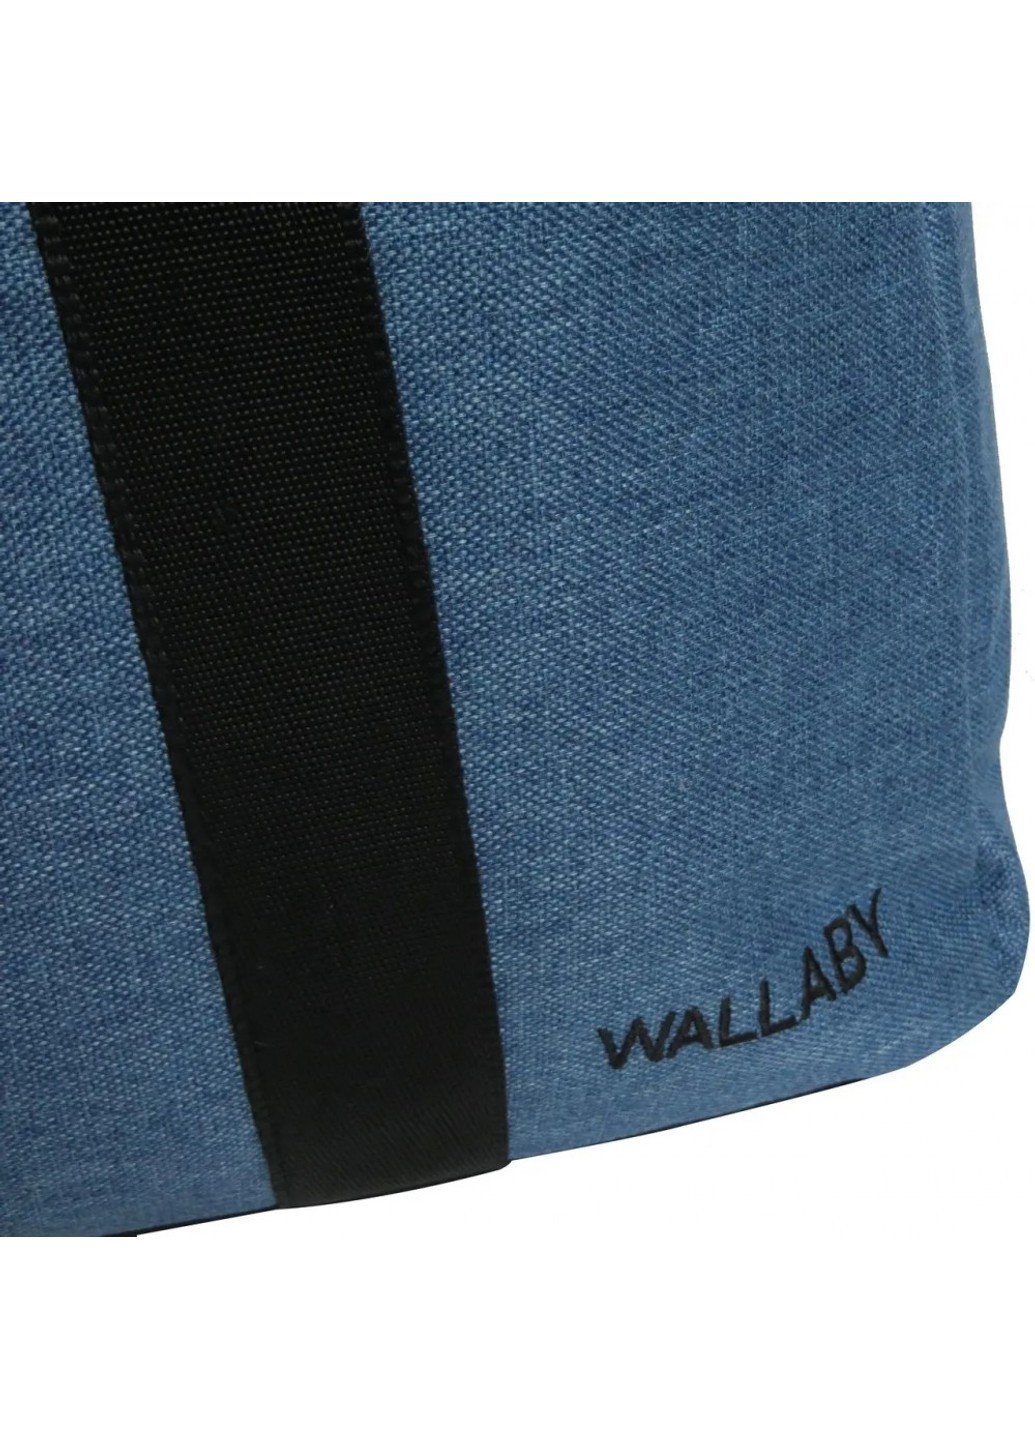 Дорожная сумка 22 л 2550 blue Wallaby (271813555)